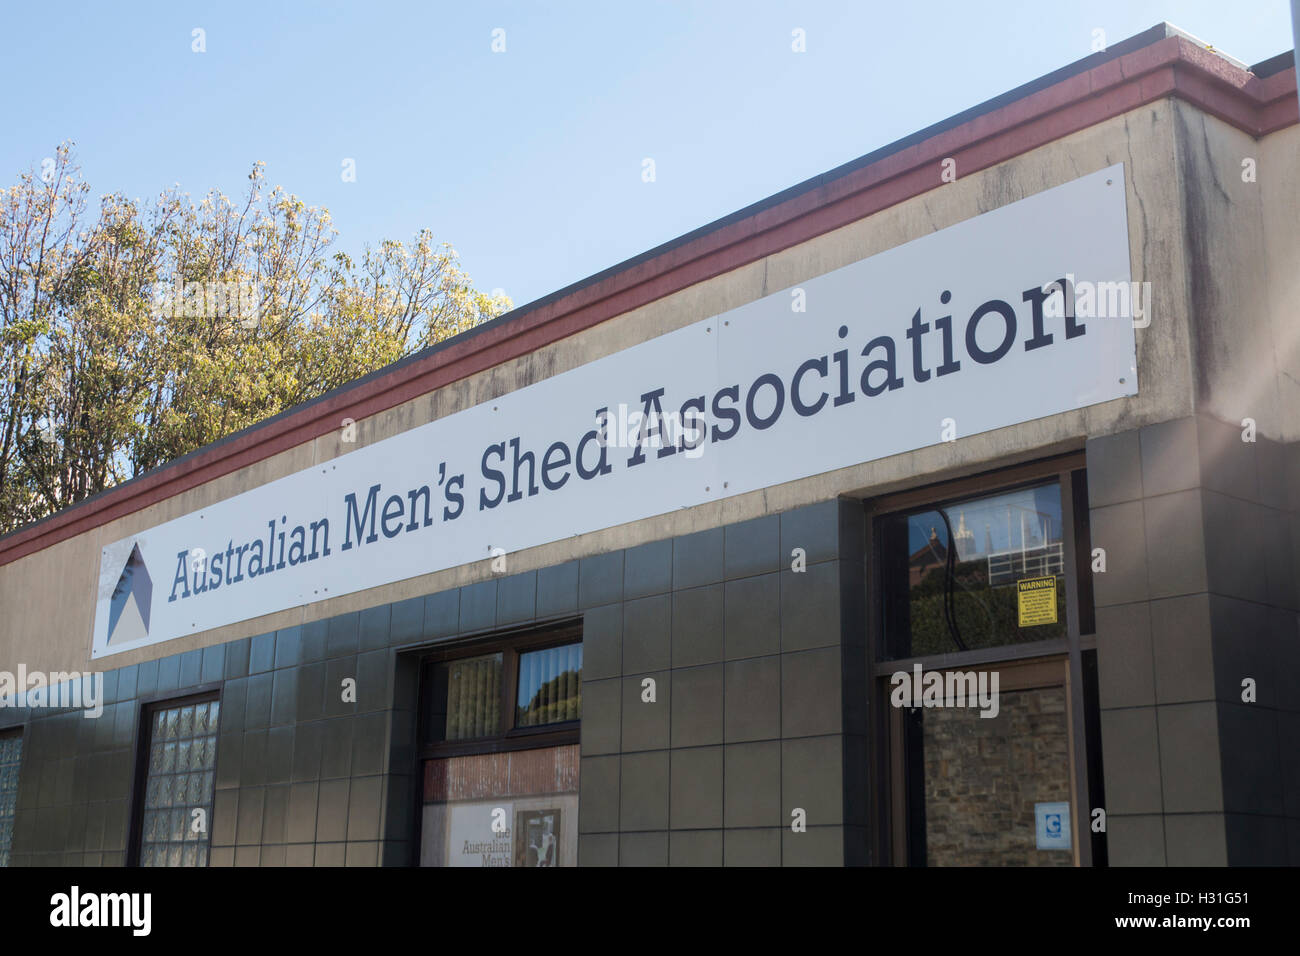 Australian Men's Shed signe et des locaux d'association Newcastle NSW Australie Nouvelle Galles du Sud Banque D'Images